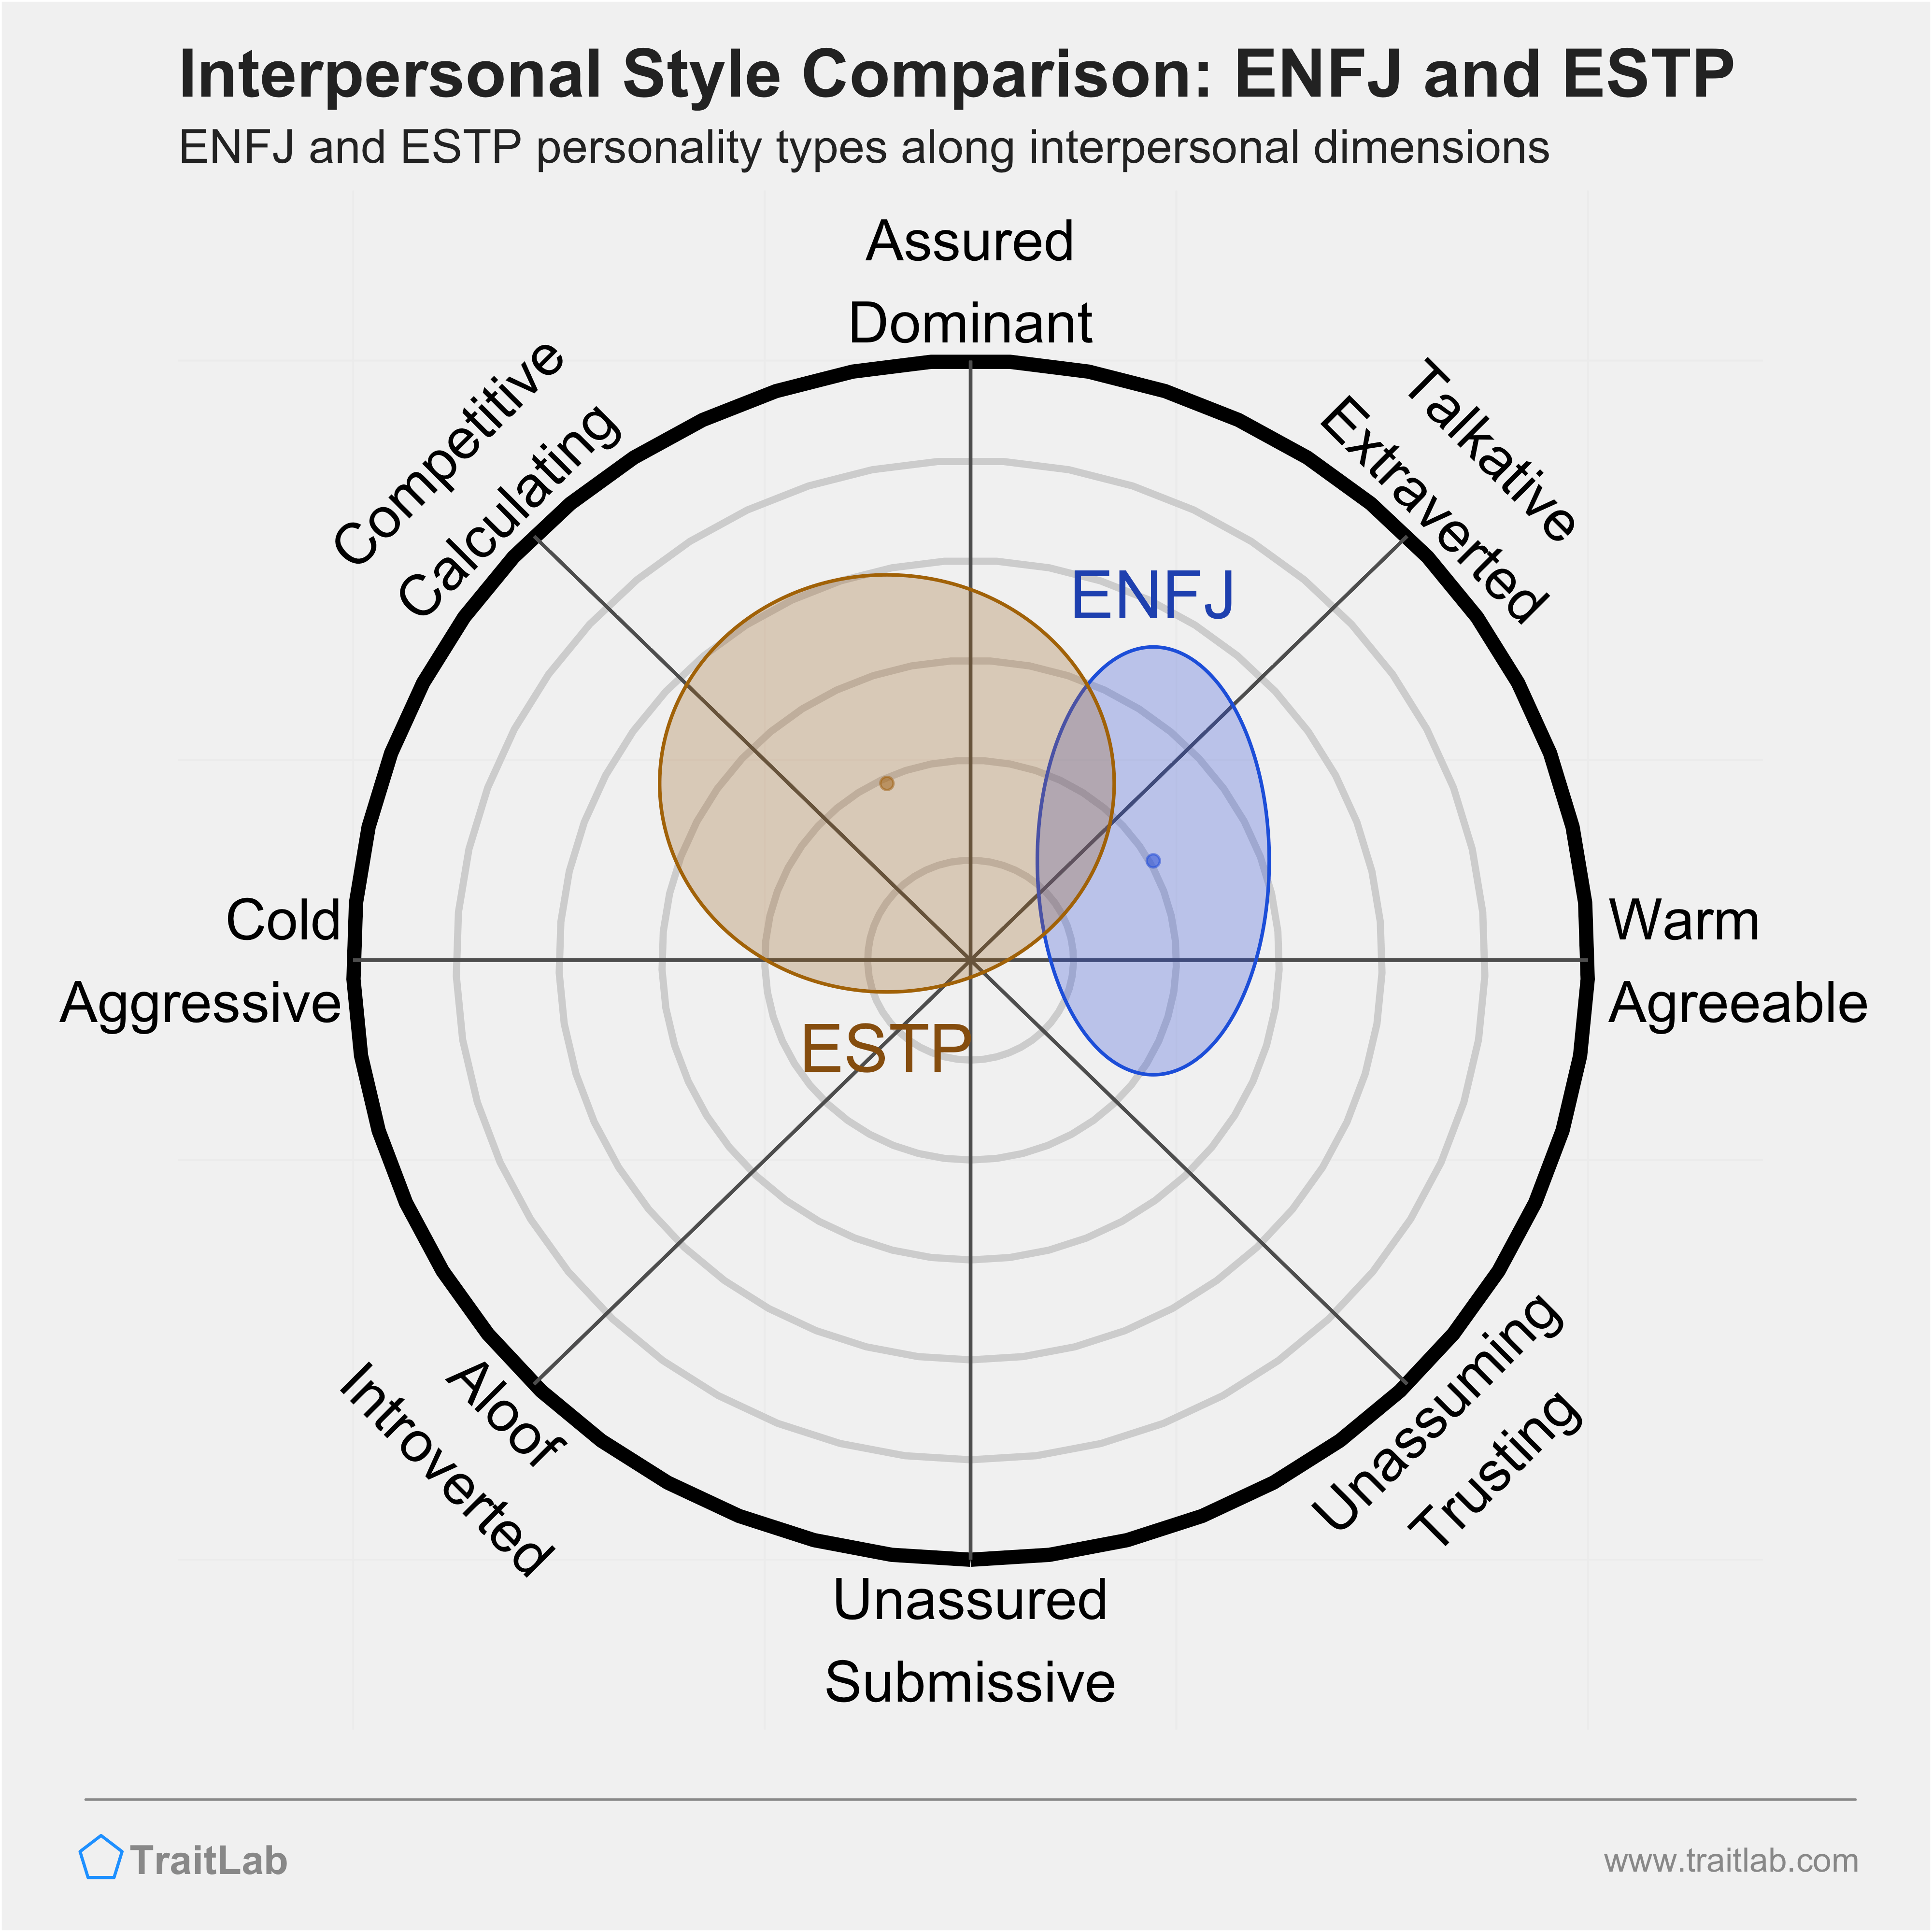 ENFJ and ESTP comparison across interpersonal dimensions